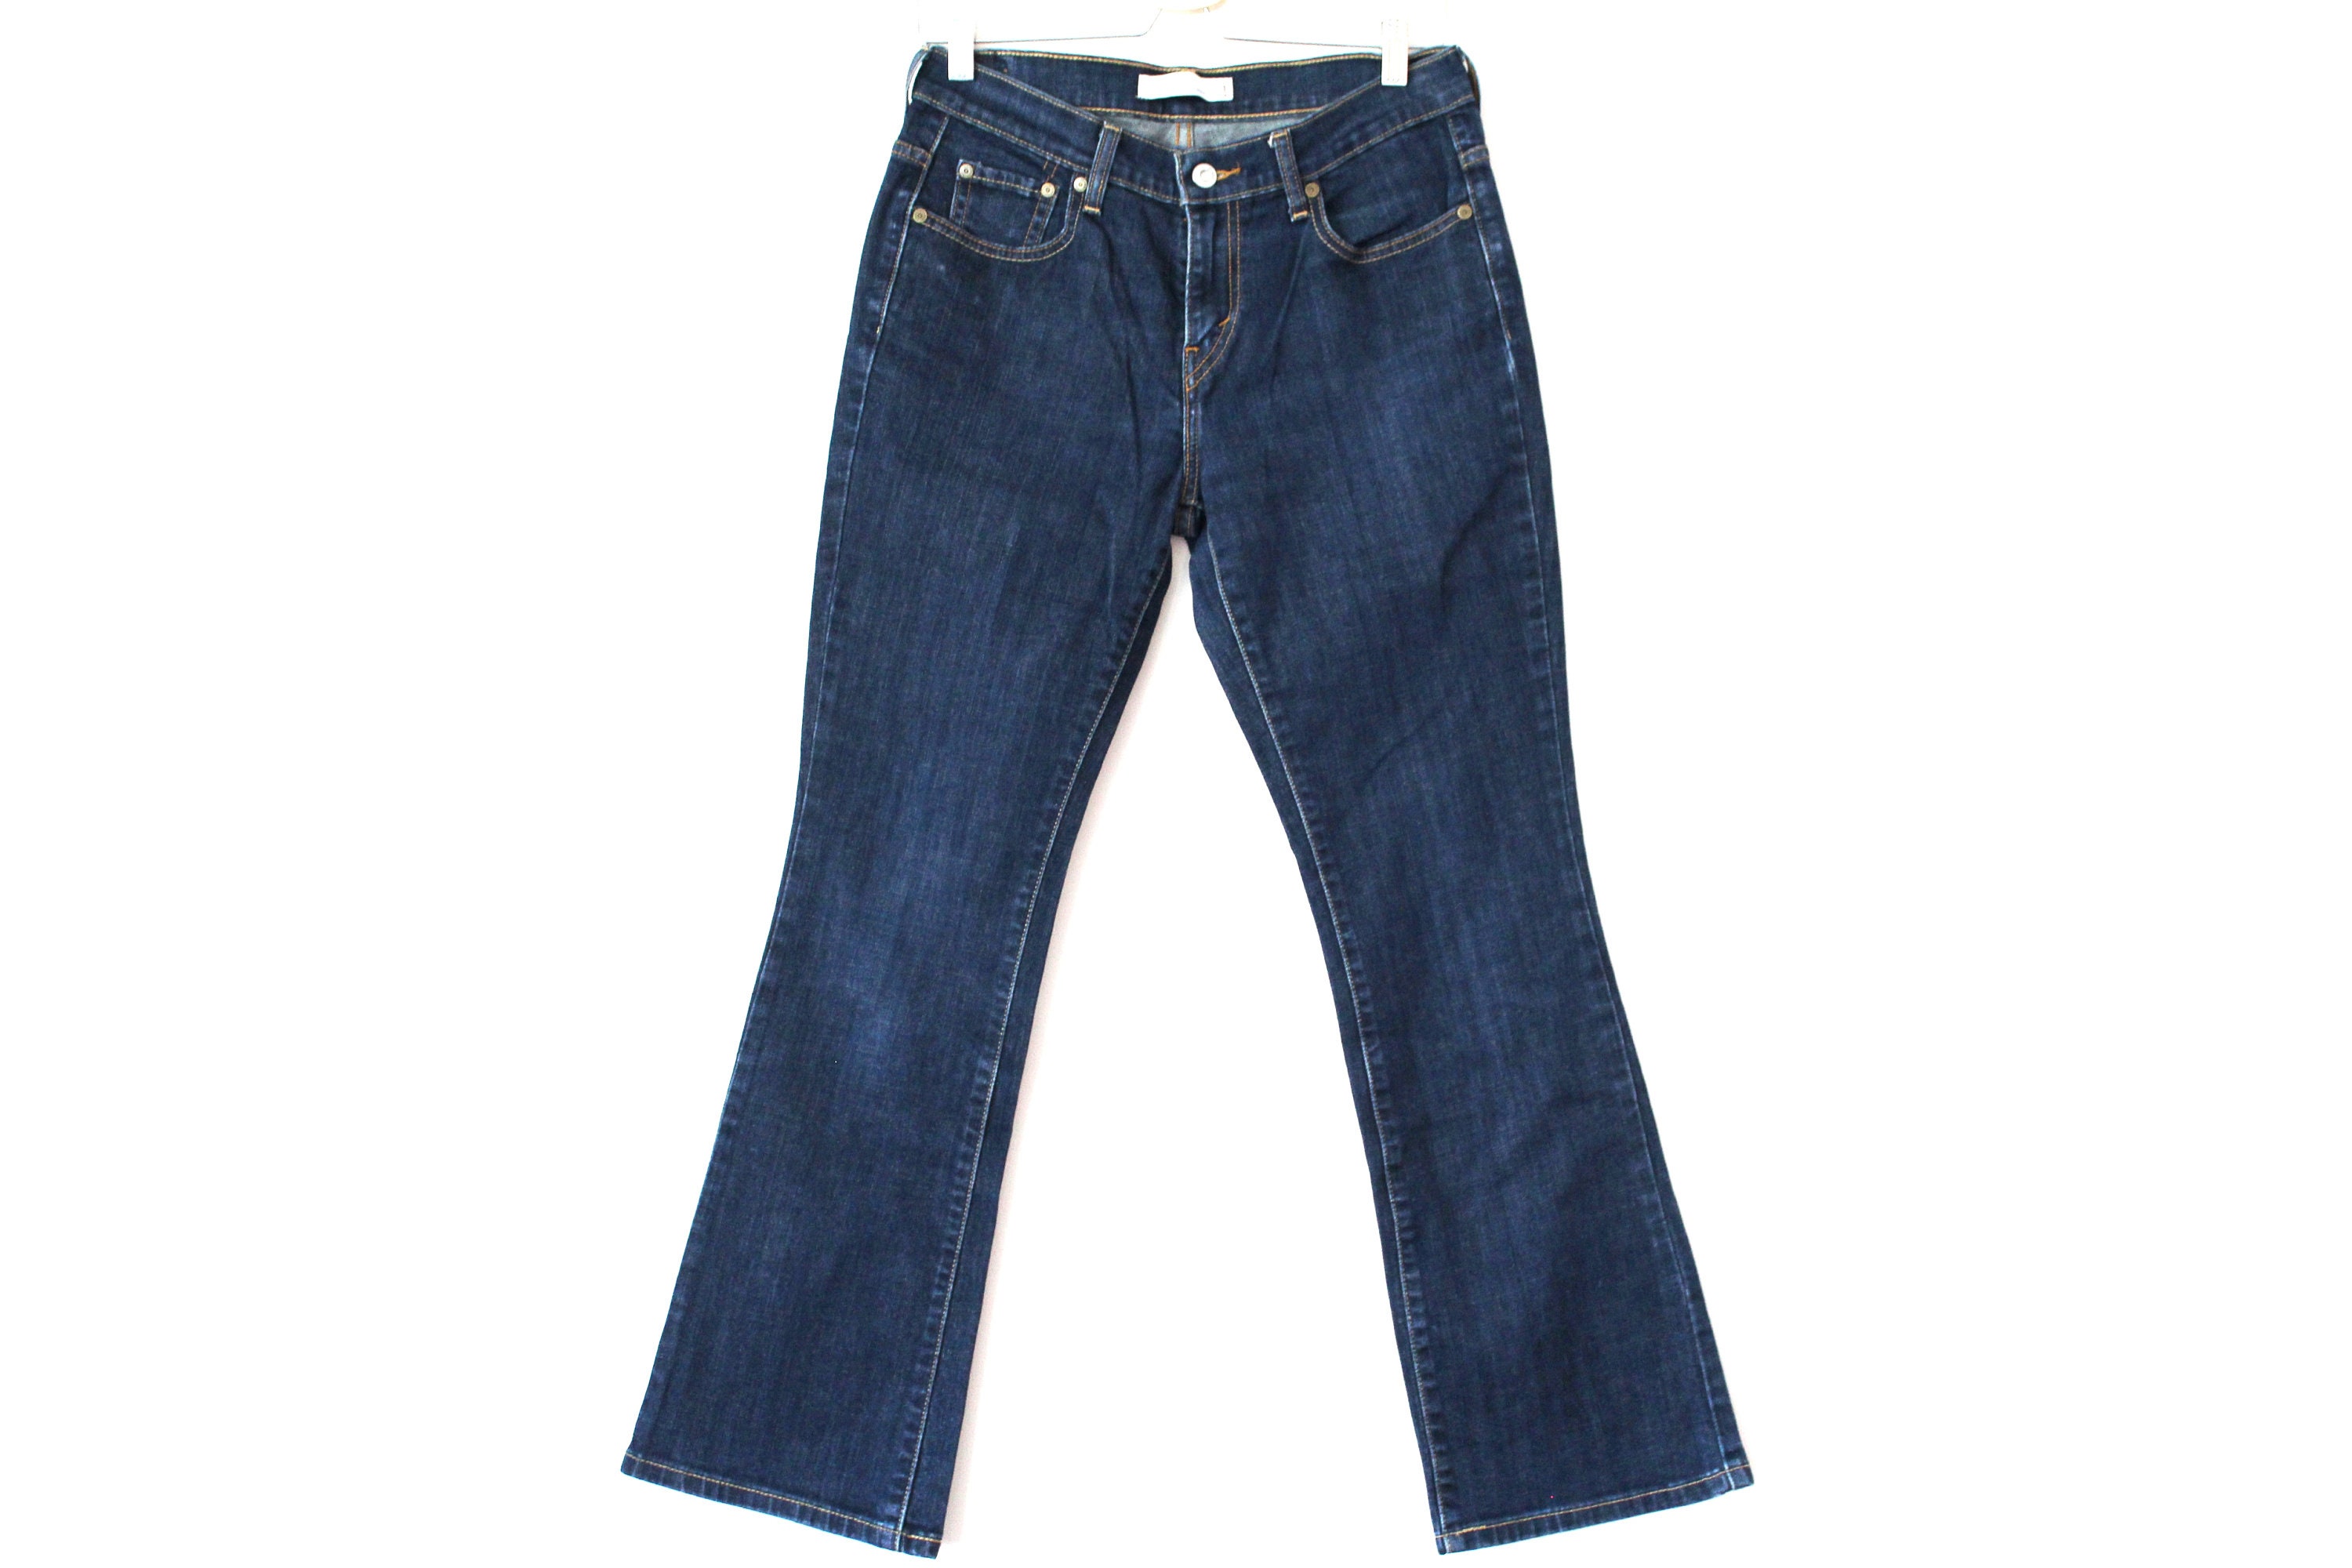 Vintage Levis 515 Bootcut Jeans Blue Women's Jeans | Etsy